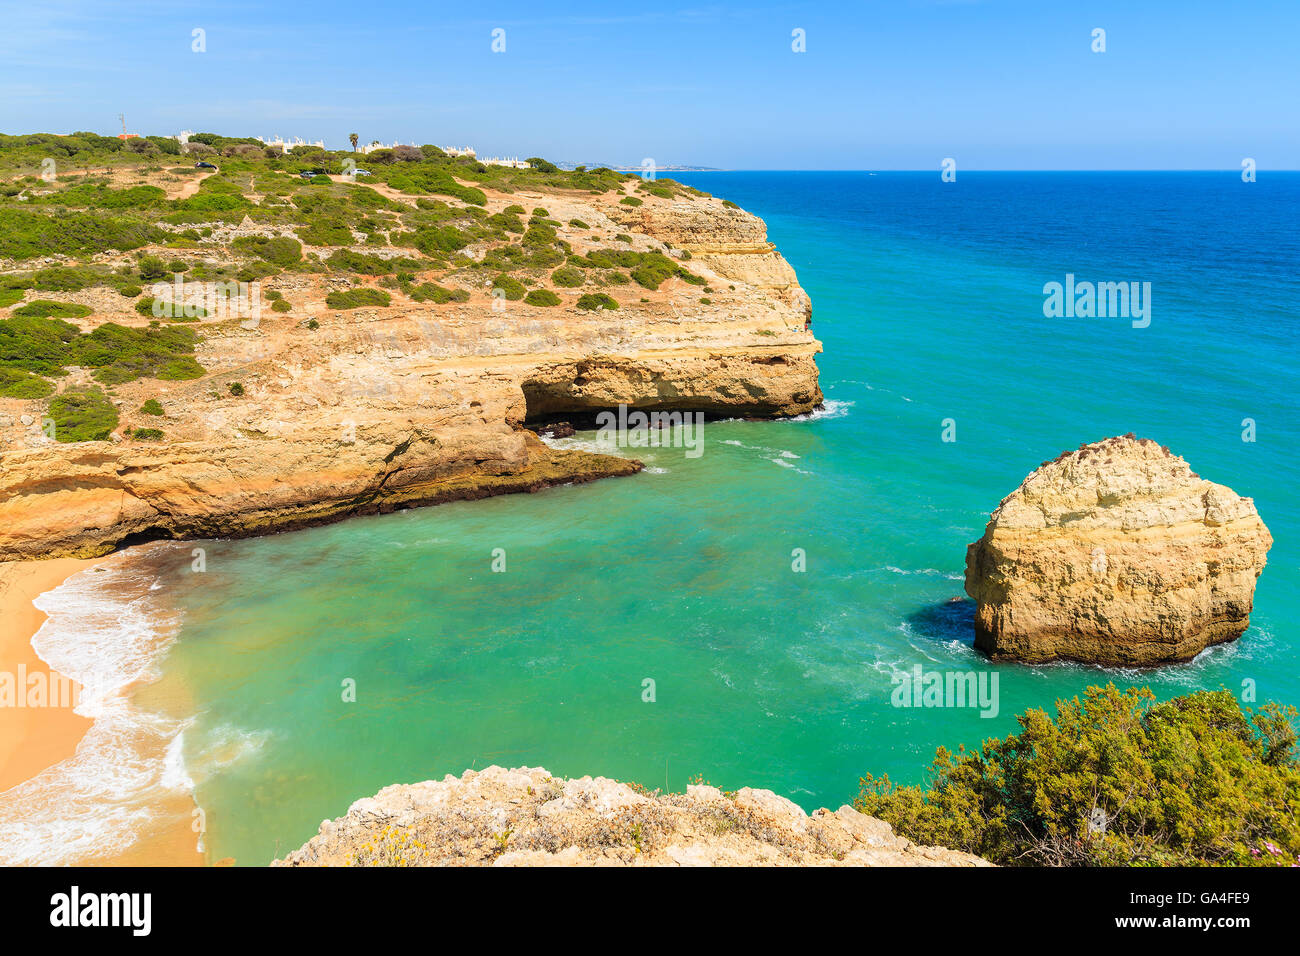 Spiaggia e rock in turchese del mare sulla costa del Portogallo vicino a Carvoeiro città Foto Stock